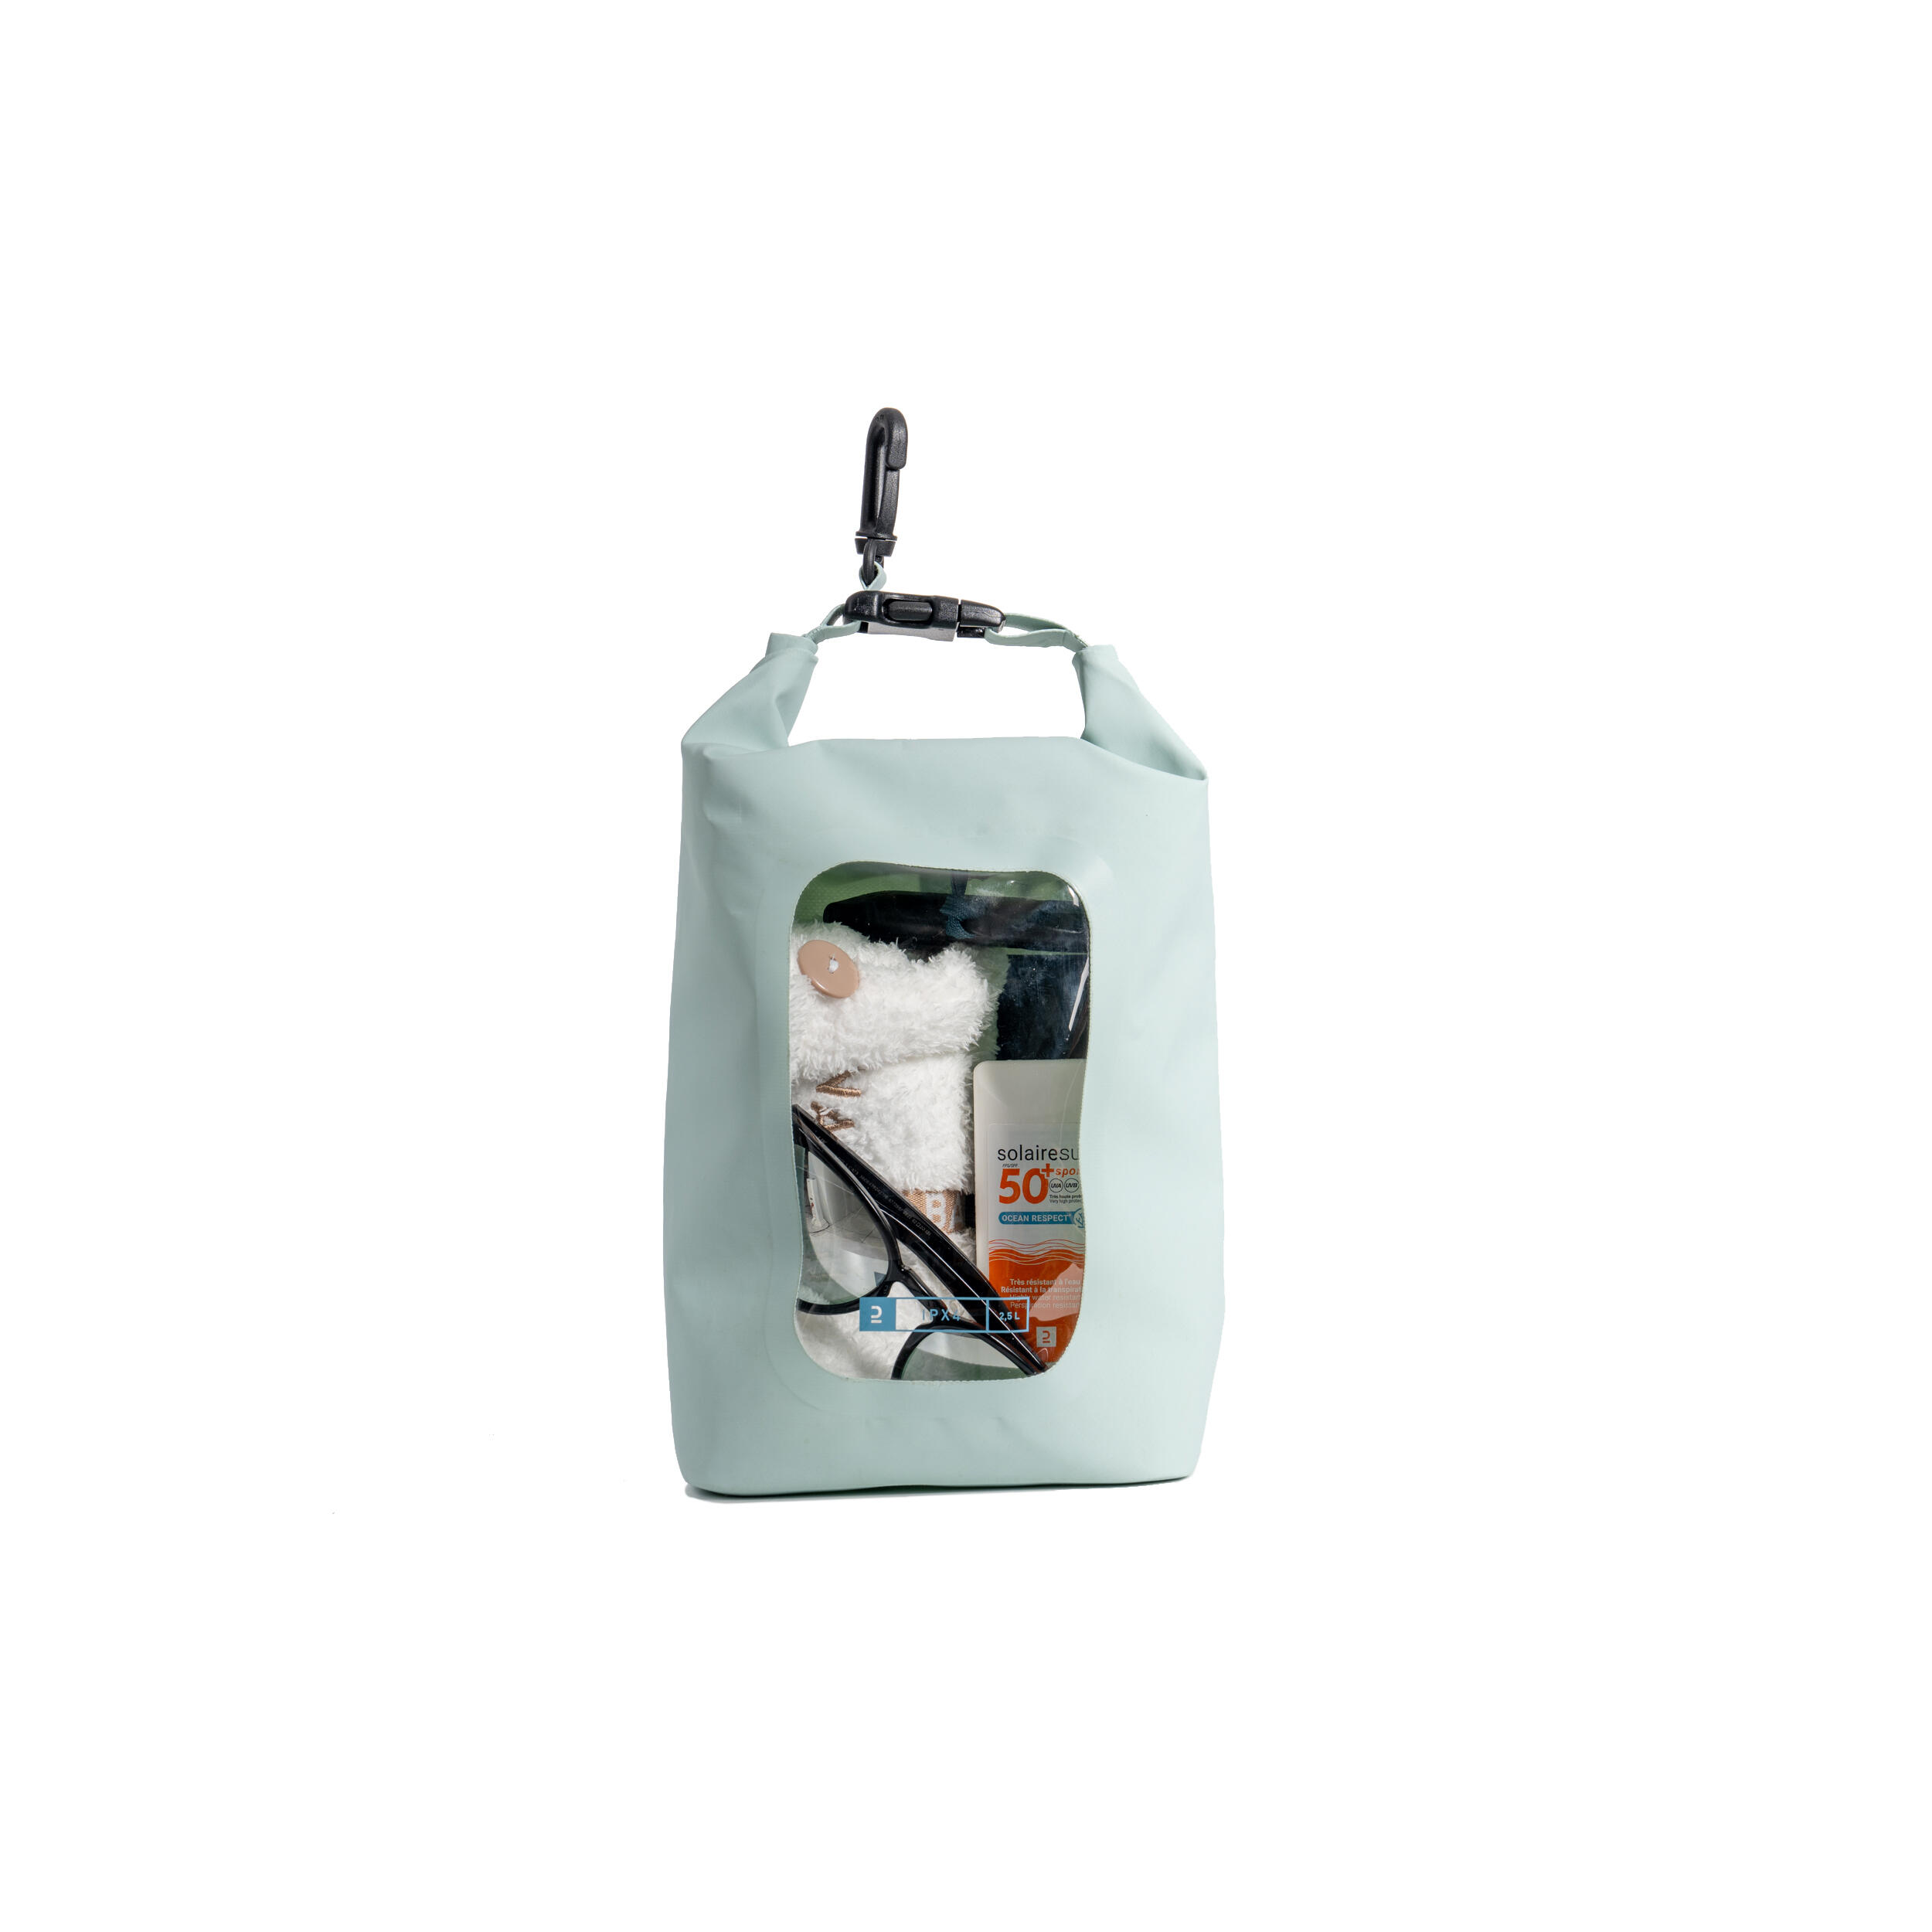 ITIWIT Wasserfeste Tasche 2,5 L mit Schutzart IPX4 und Sichtfenster. EINHEITSGRÖSSE